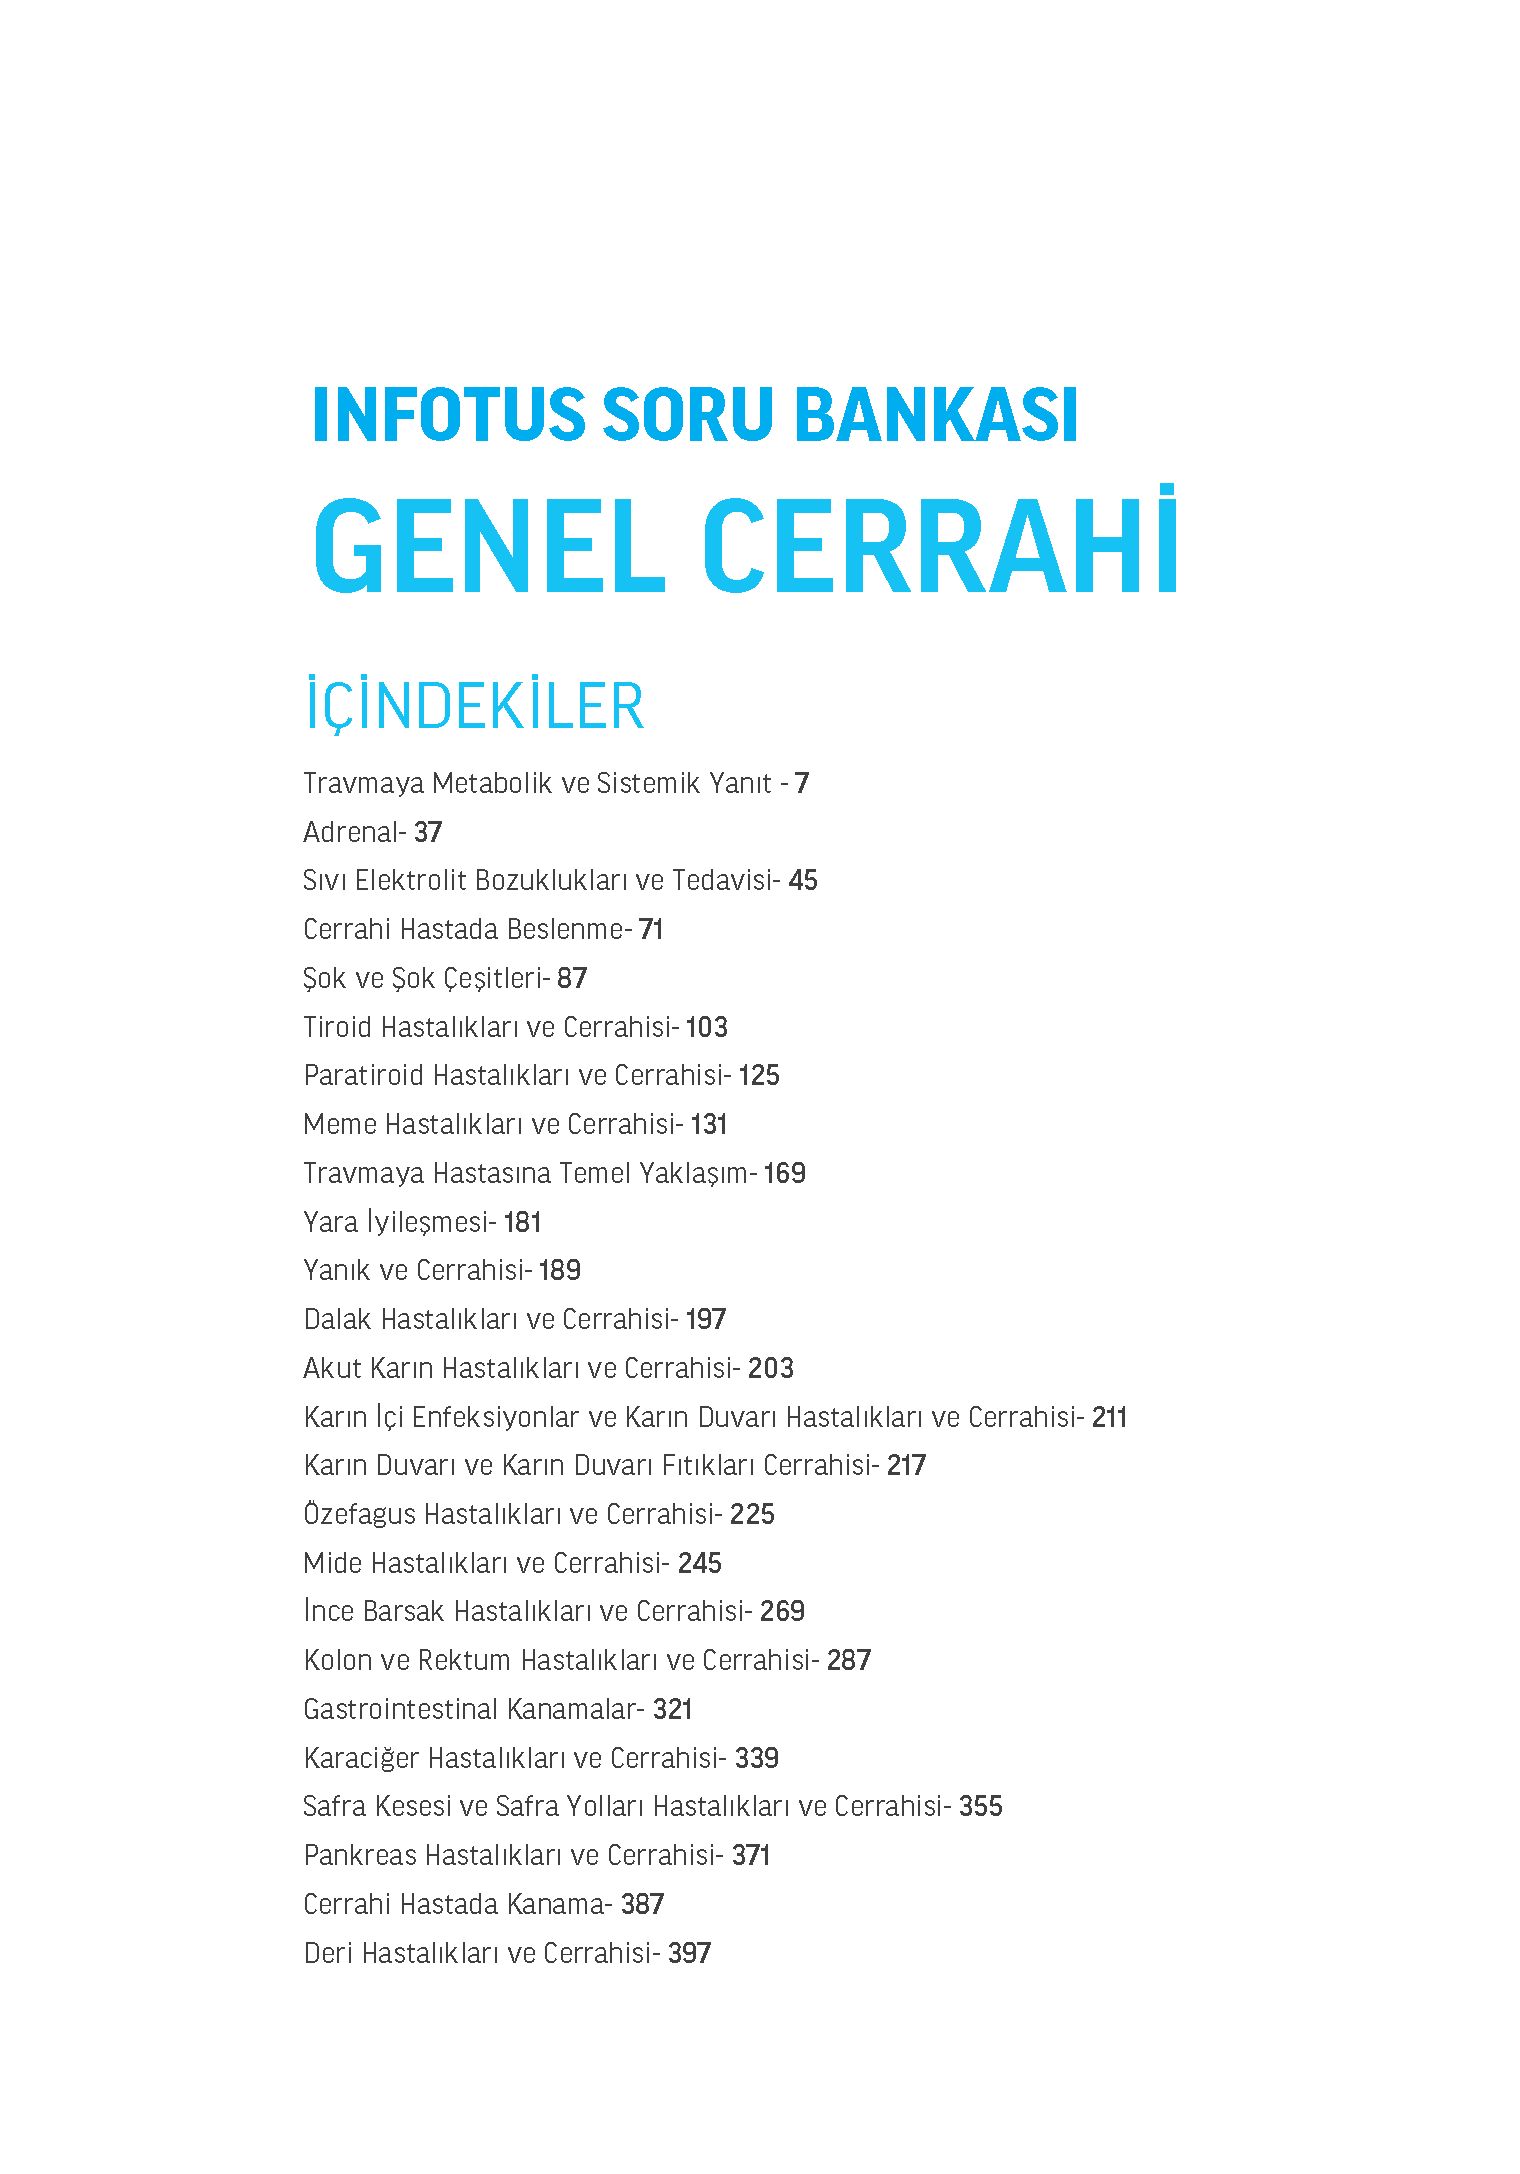 INFOTUS SORU BANKASI GENEL CERRAHI_Page_003